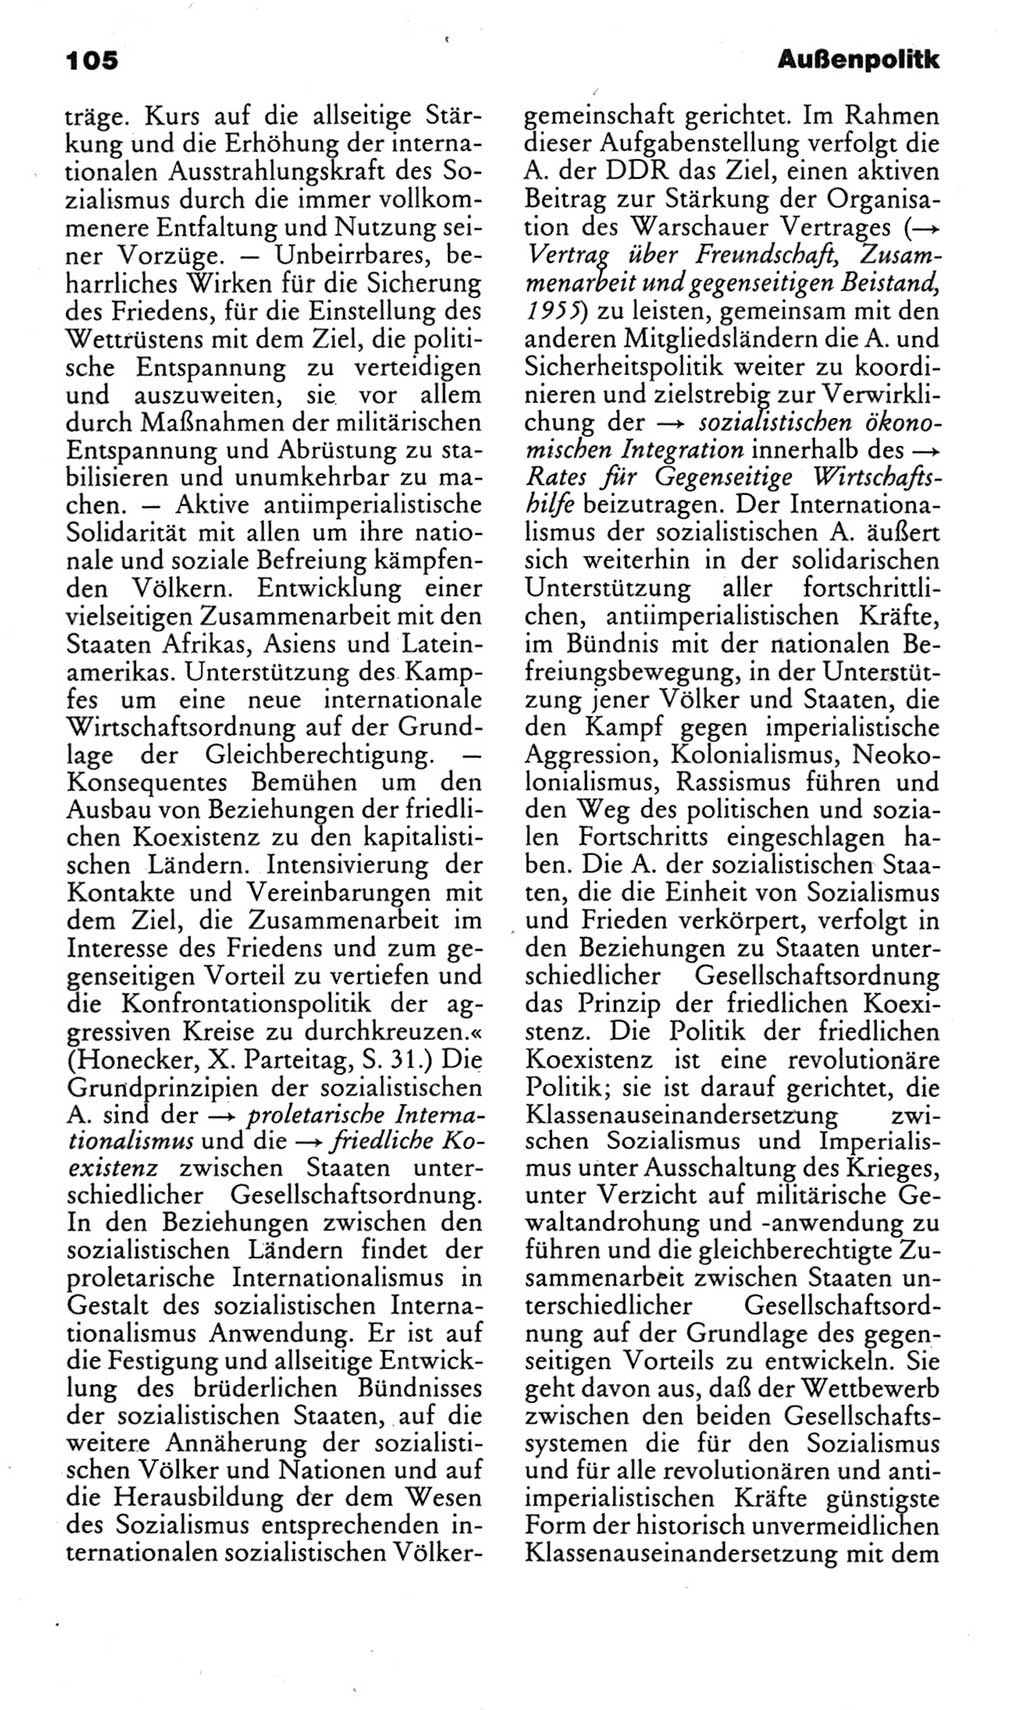 Kleines politisches Wörterbuch [Deutsche Demokratische Republik (DDR)] 1985, Seite 105 (Kl. pol. Wb. DDR 1985, S. 105)